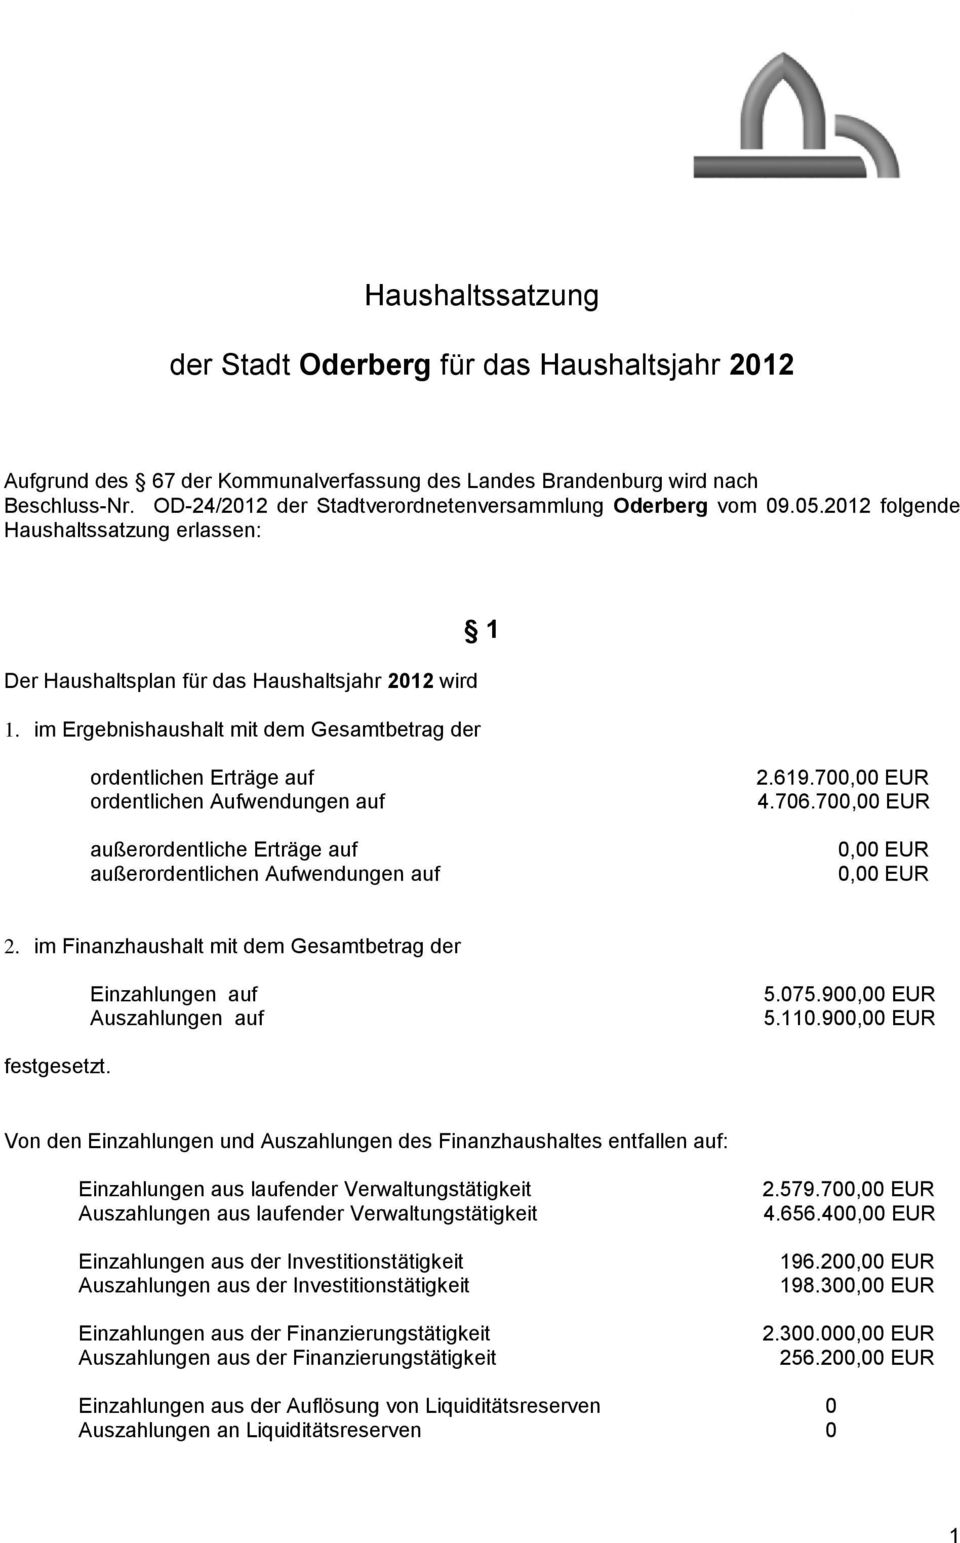 im Ergebnishaushalt mit dem Gesamtbetrag der 1 ordentlichen Erträge auf ordentlichen Aufwendungen auf außerordentliche Erträge auf außerordentlichen Aufwendungen auf 2.619.700,00 EUR 4.706.